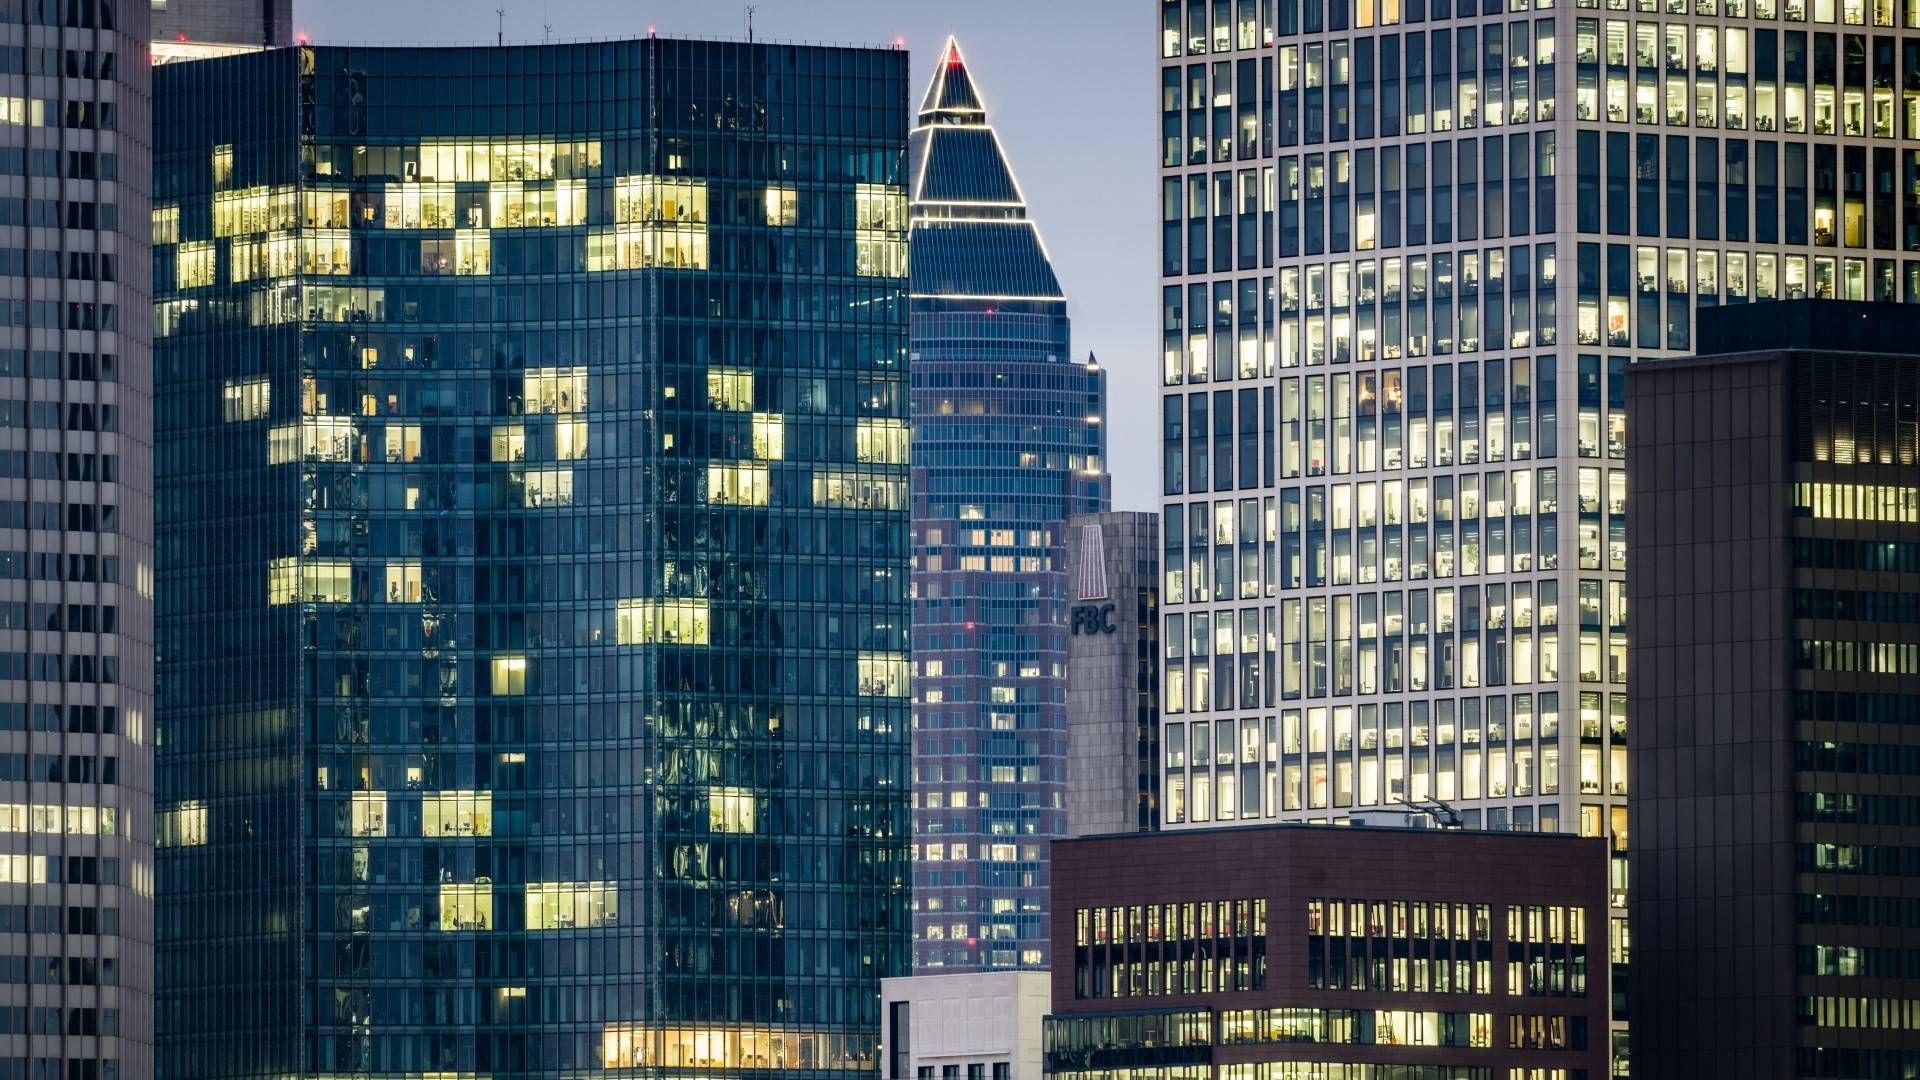 Büros in den Frankfurter Hochhäusern sind nur teilweise belegt | Foto: picture alliance/dpa | Frank Rumpenhorst